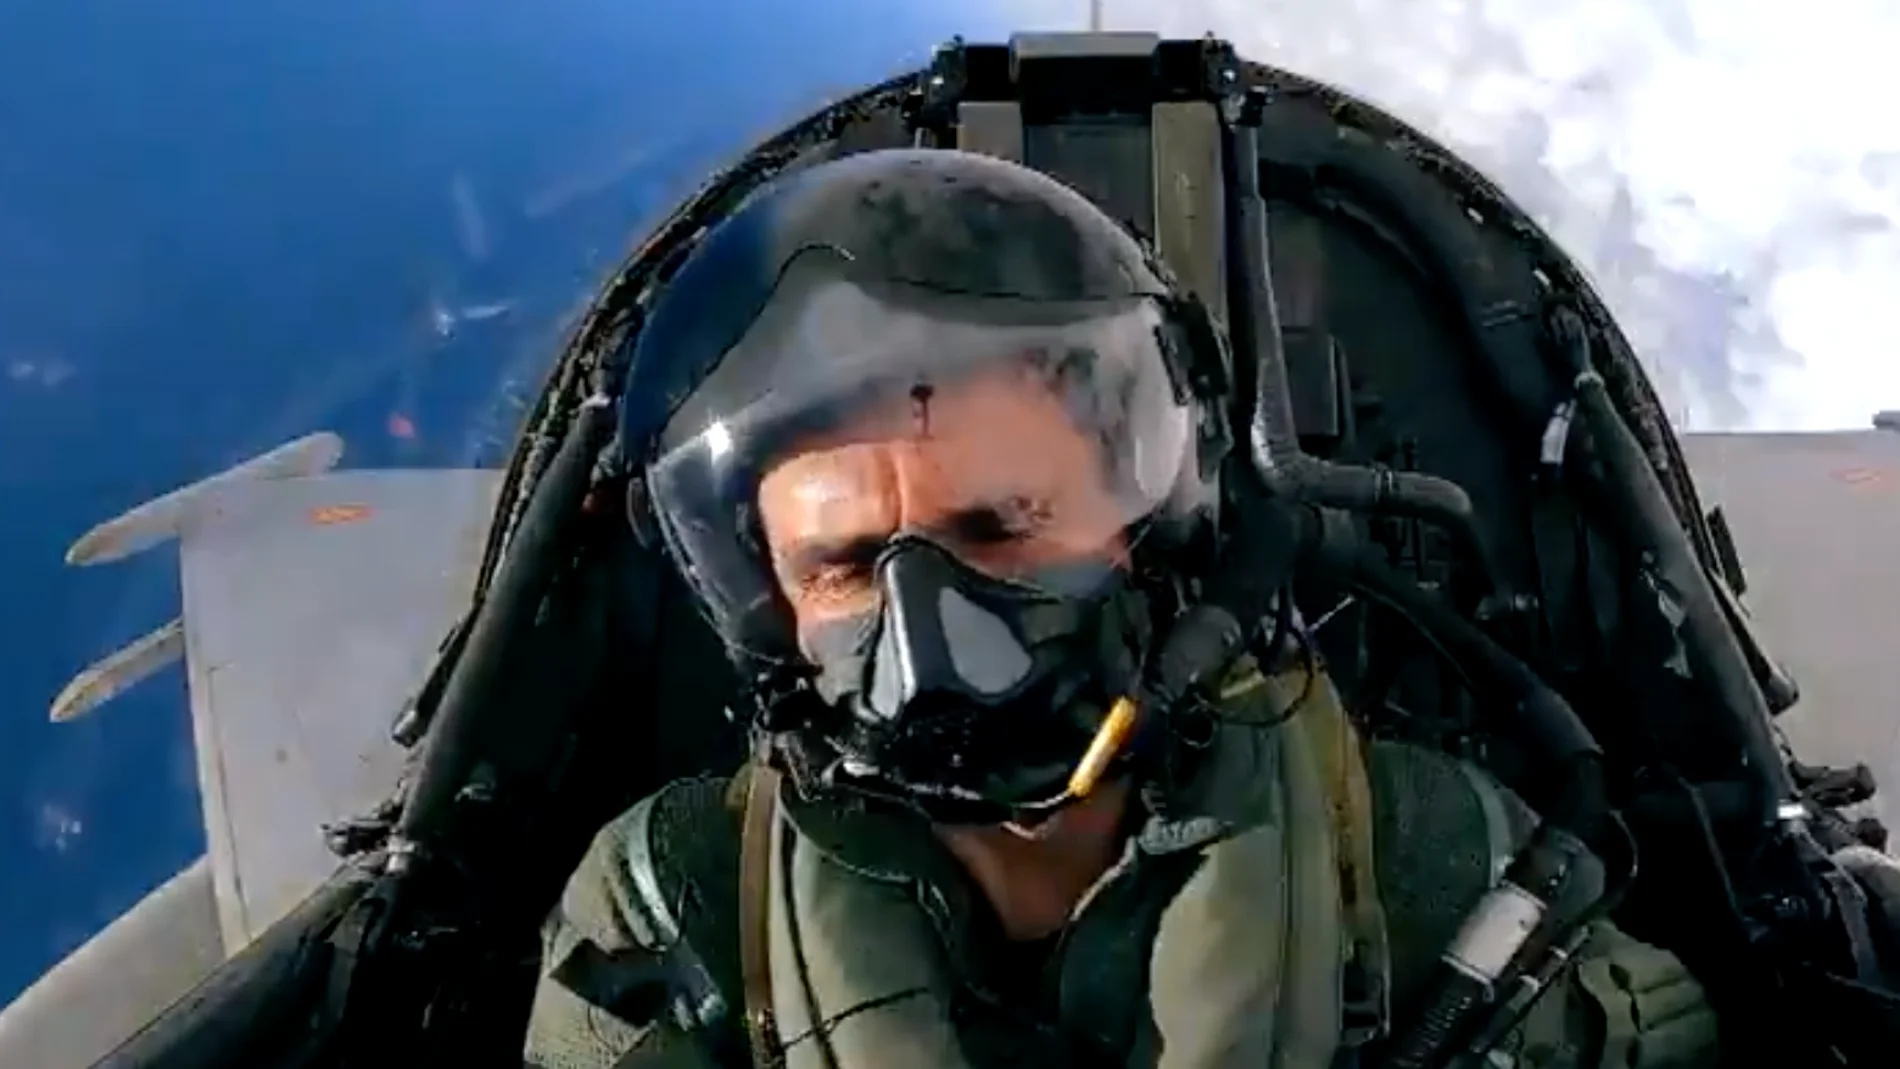 La espectacular secuencia de Pedro de la Rosa pilotando un caza del ejército del aire